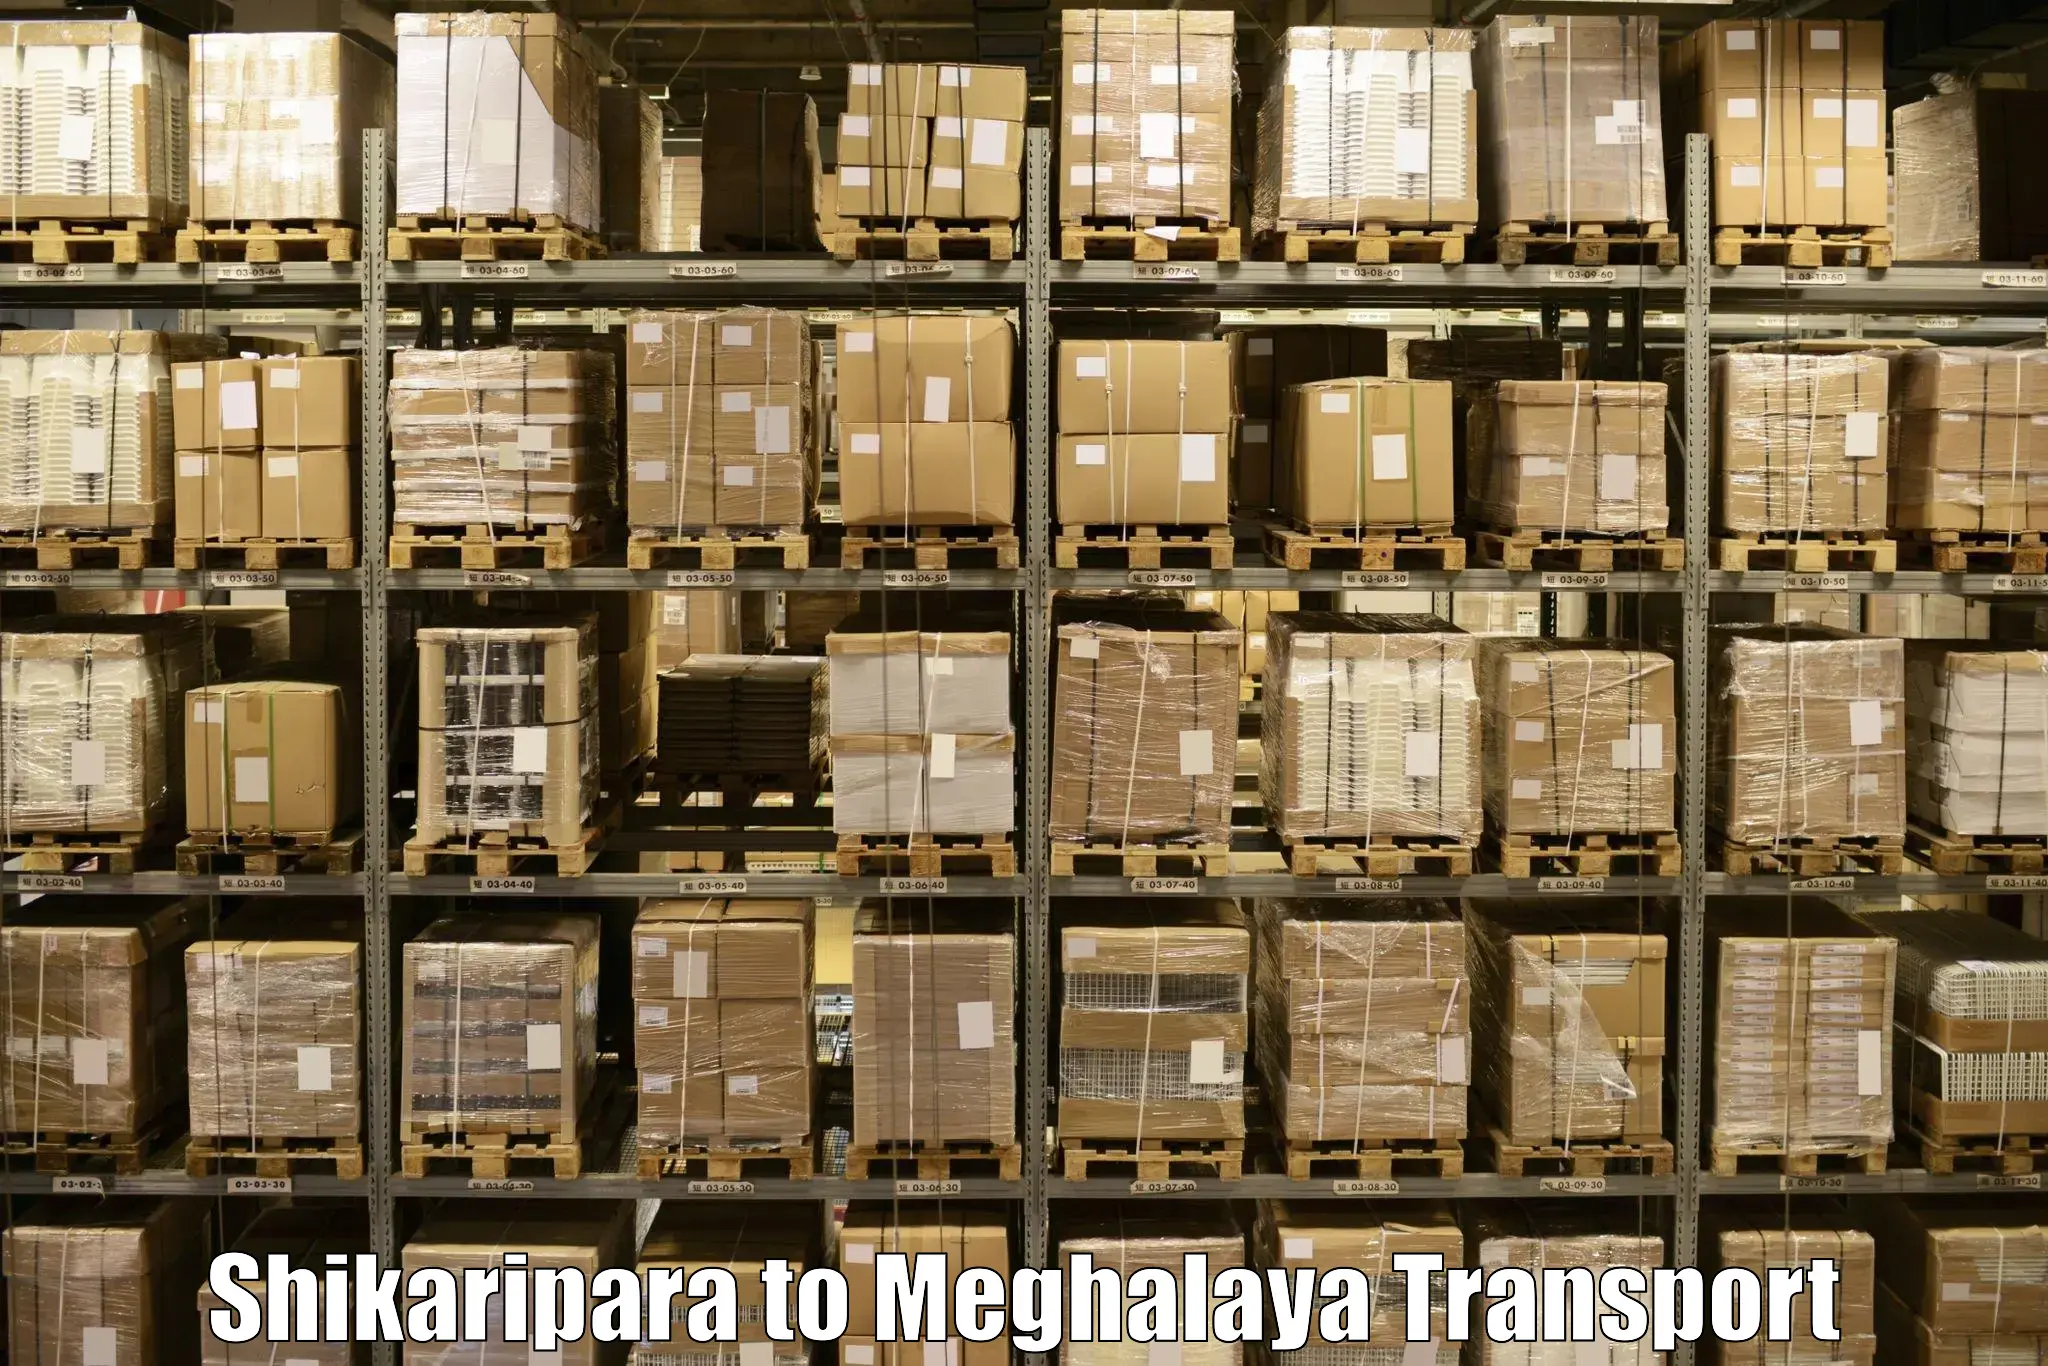 Furniture transport service Shikaripara to Garobadha